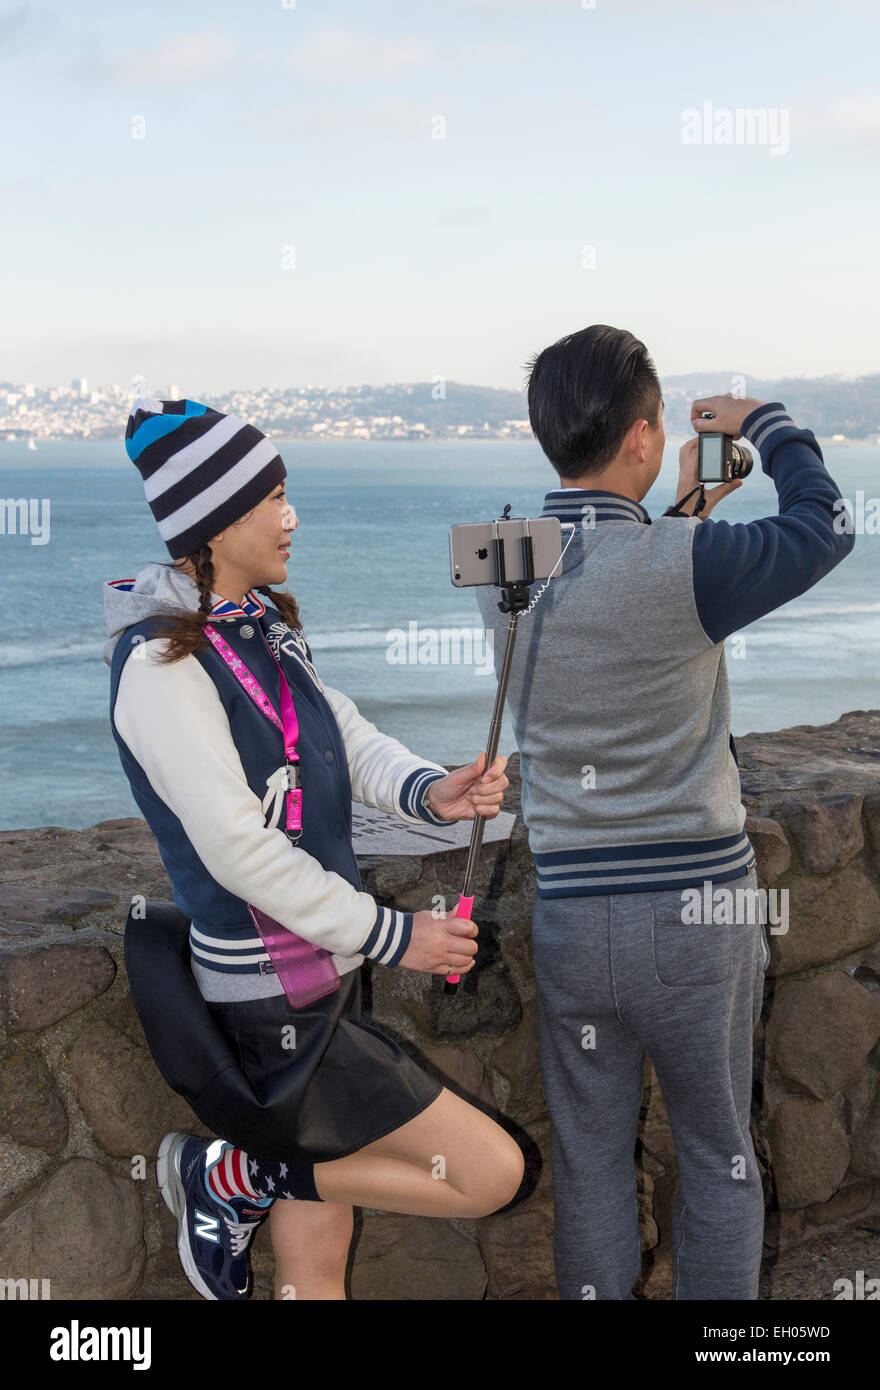 Asiatische Frau, selfie Stick, wobei selfie selfie, Foto, Vista Point, nördlich der Golden Gate Bridge, Stadt Sausalito, Sausalito, Kalifornien Stockfoto